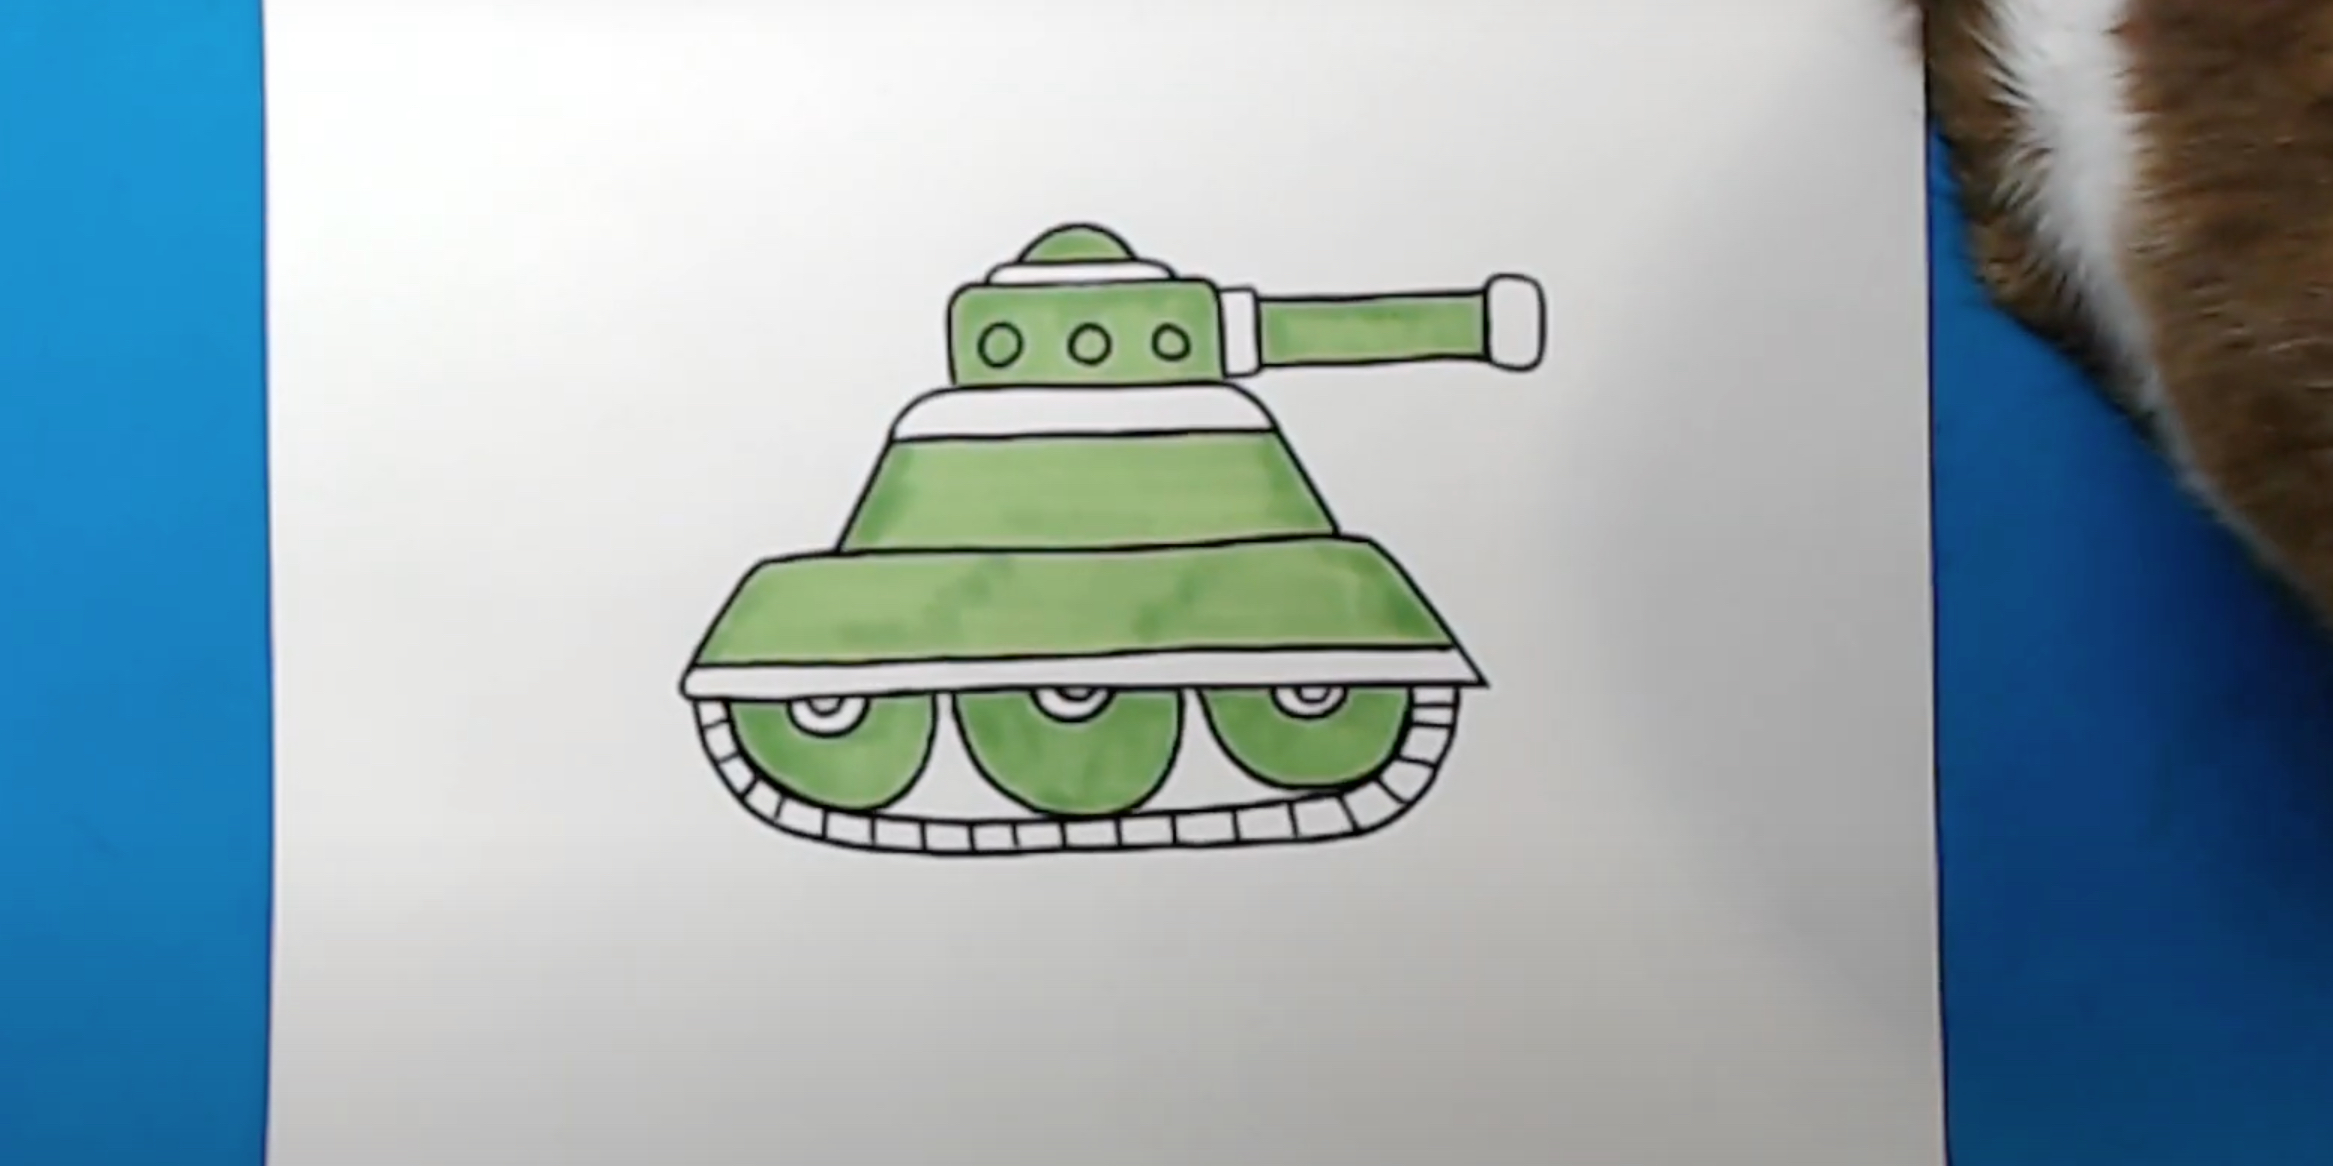 Как нарисовать Танк Т-34